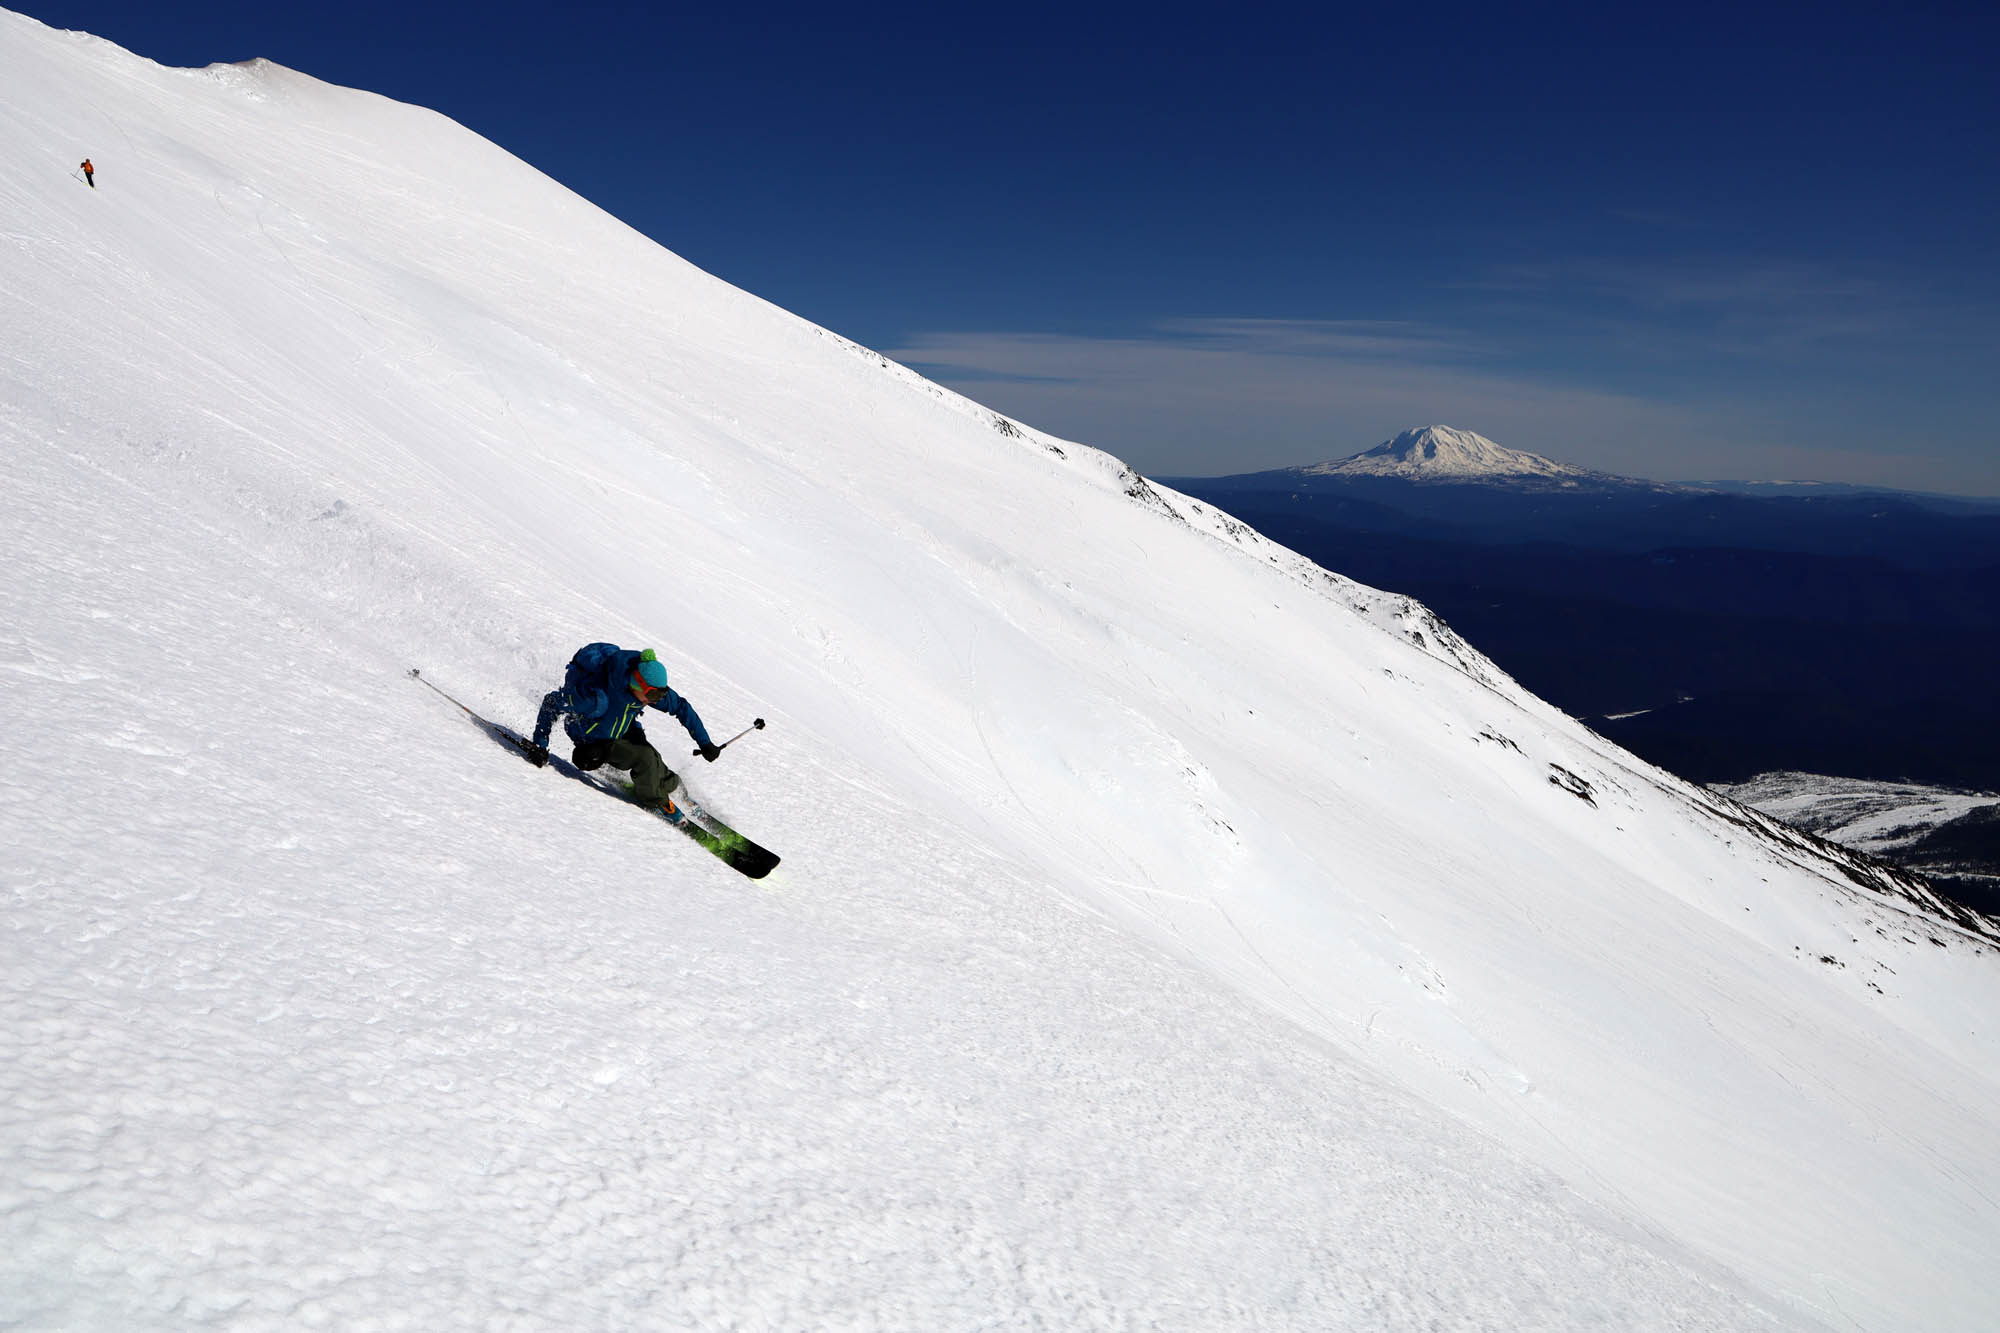 Essai en neige de printemps du nouveau ski M-Tour 90 de Dynastar